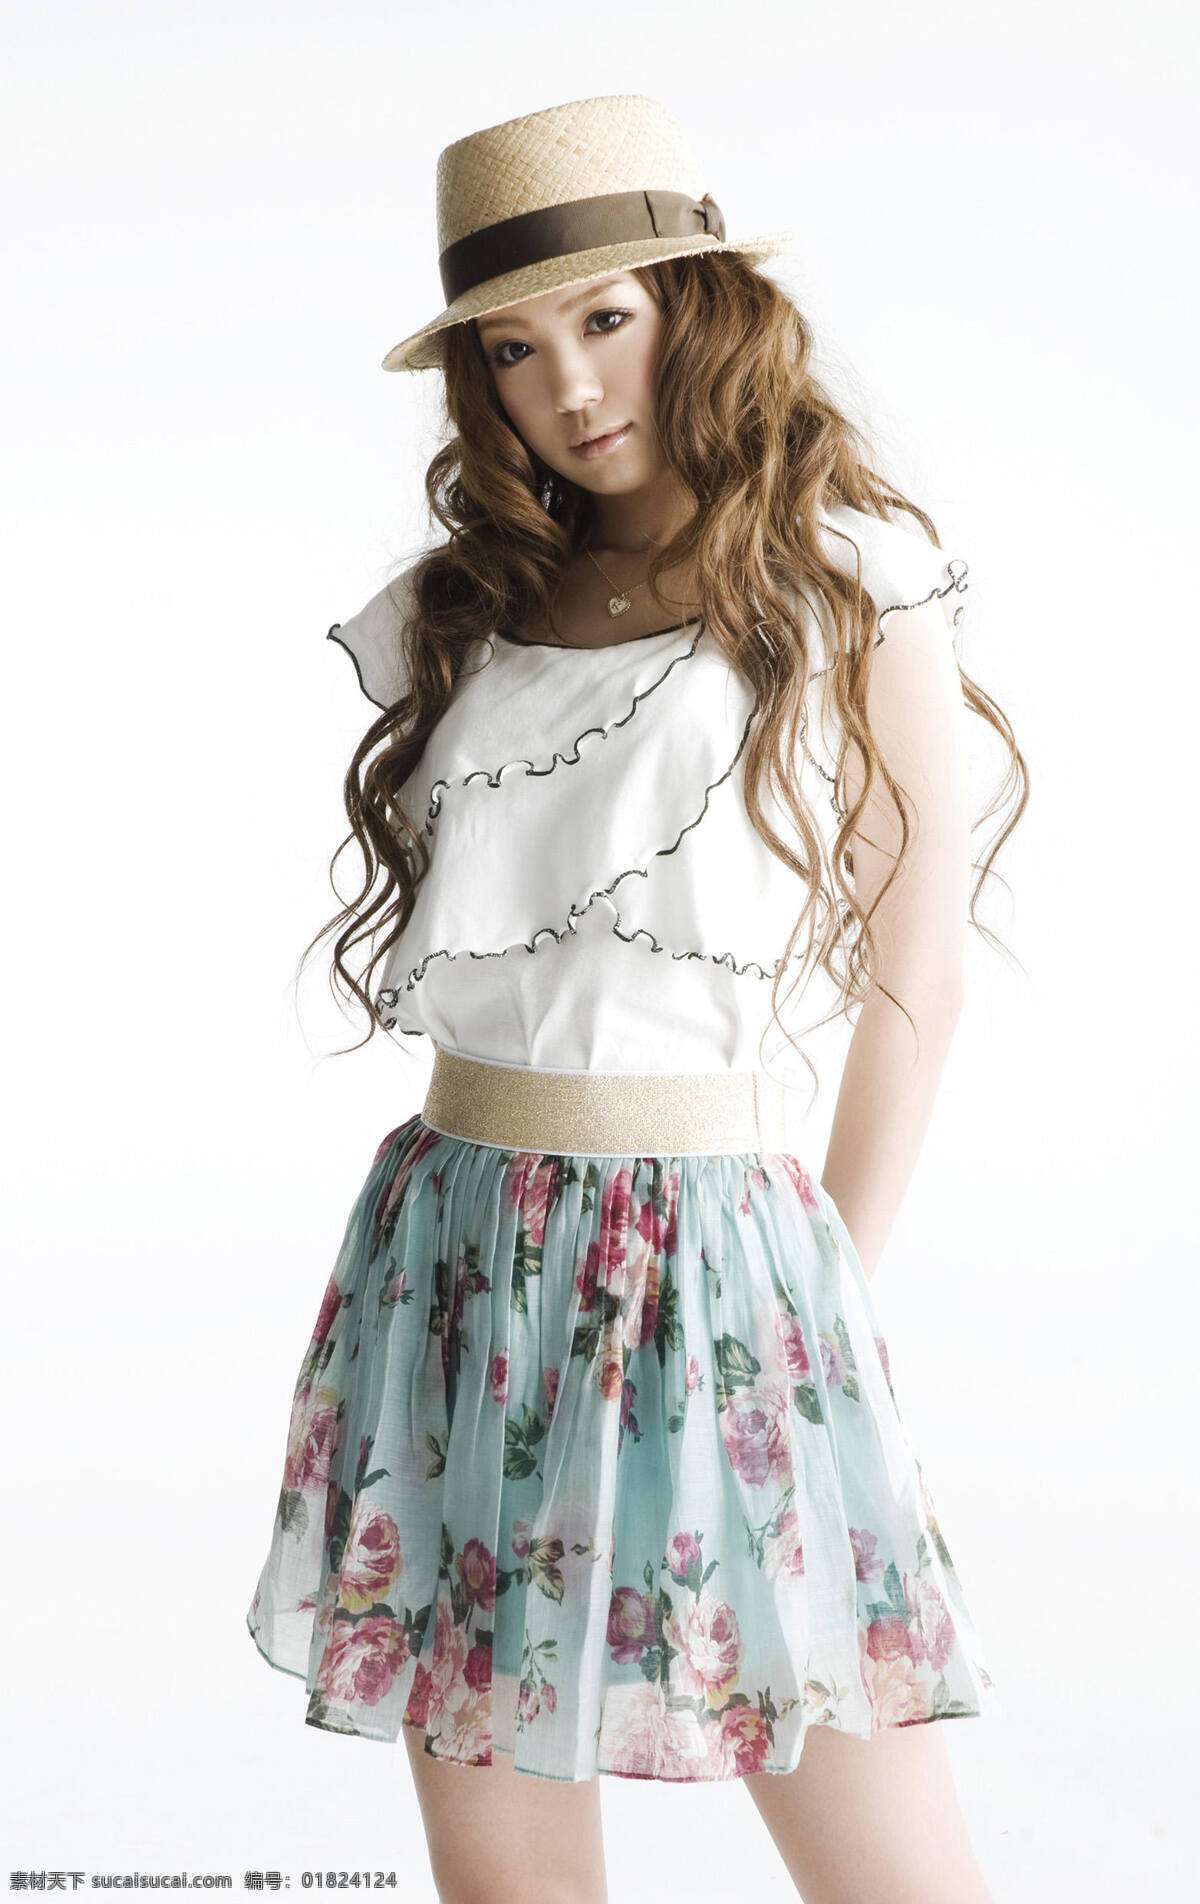 西野加奈 宣传图 日本 索尼 艺人 歌手 美女 日本明星封面 明星偶像 人物图库